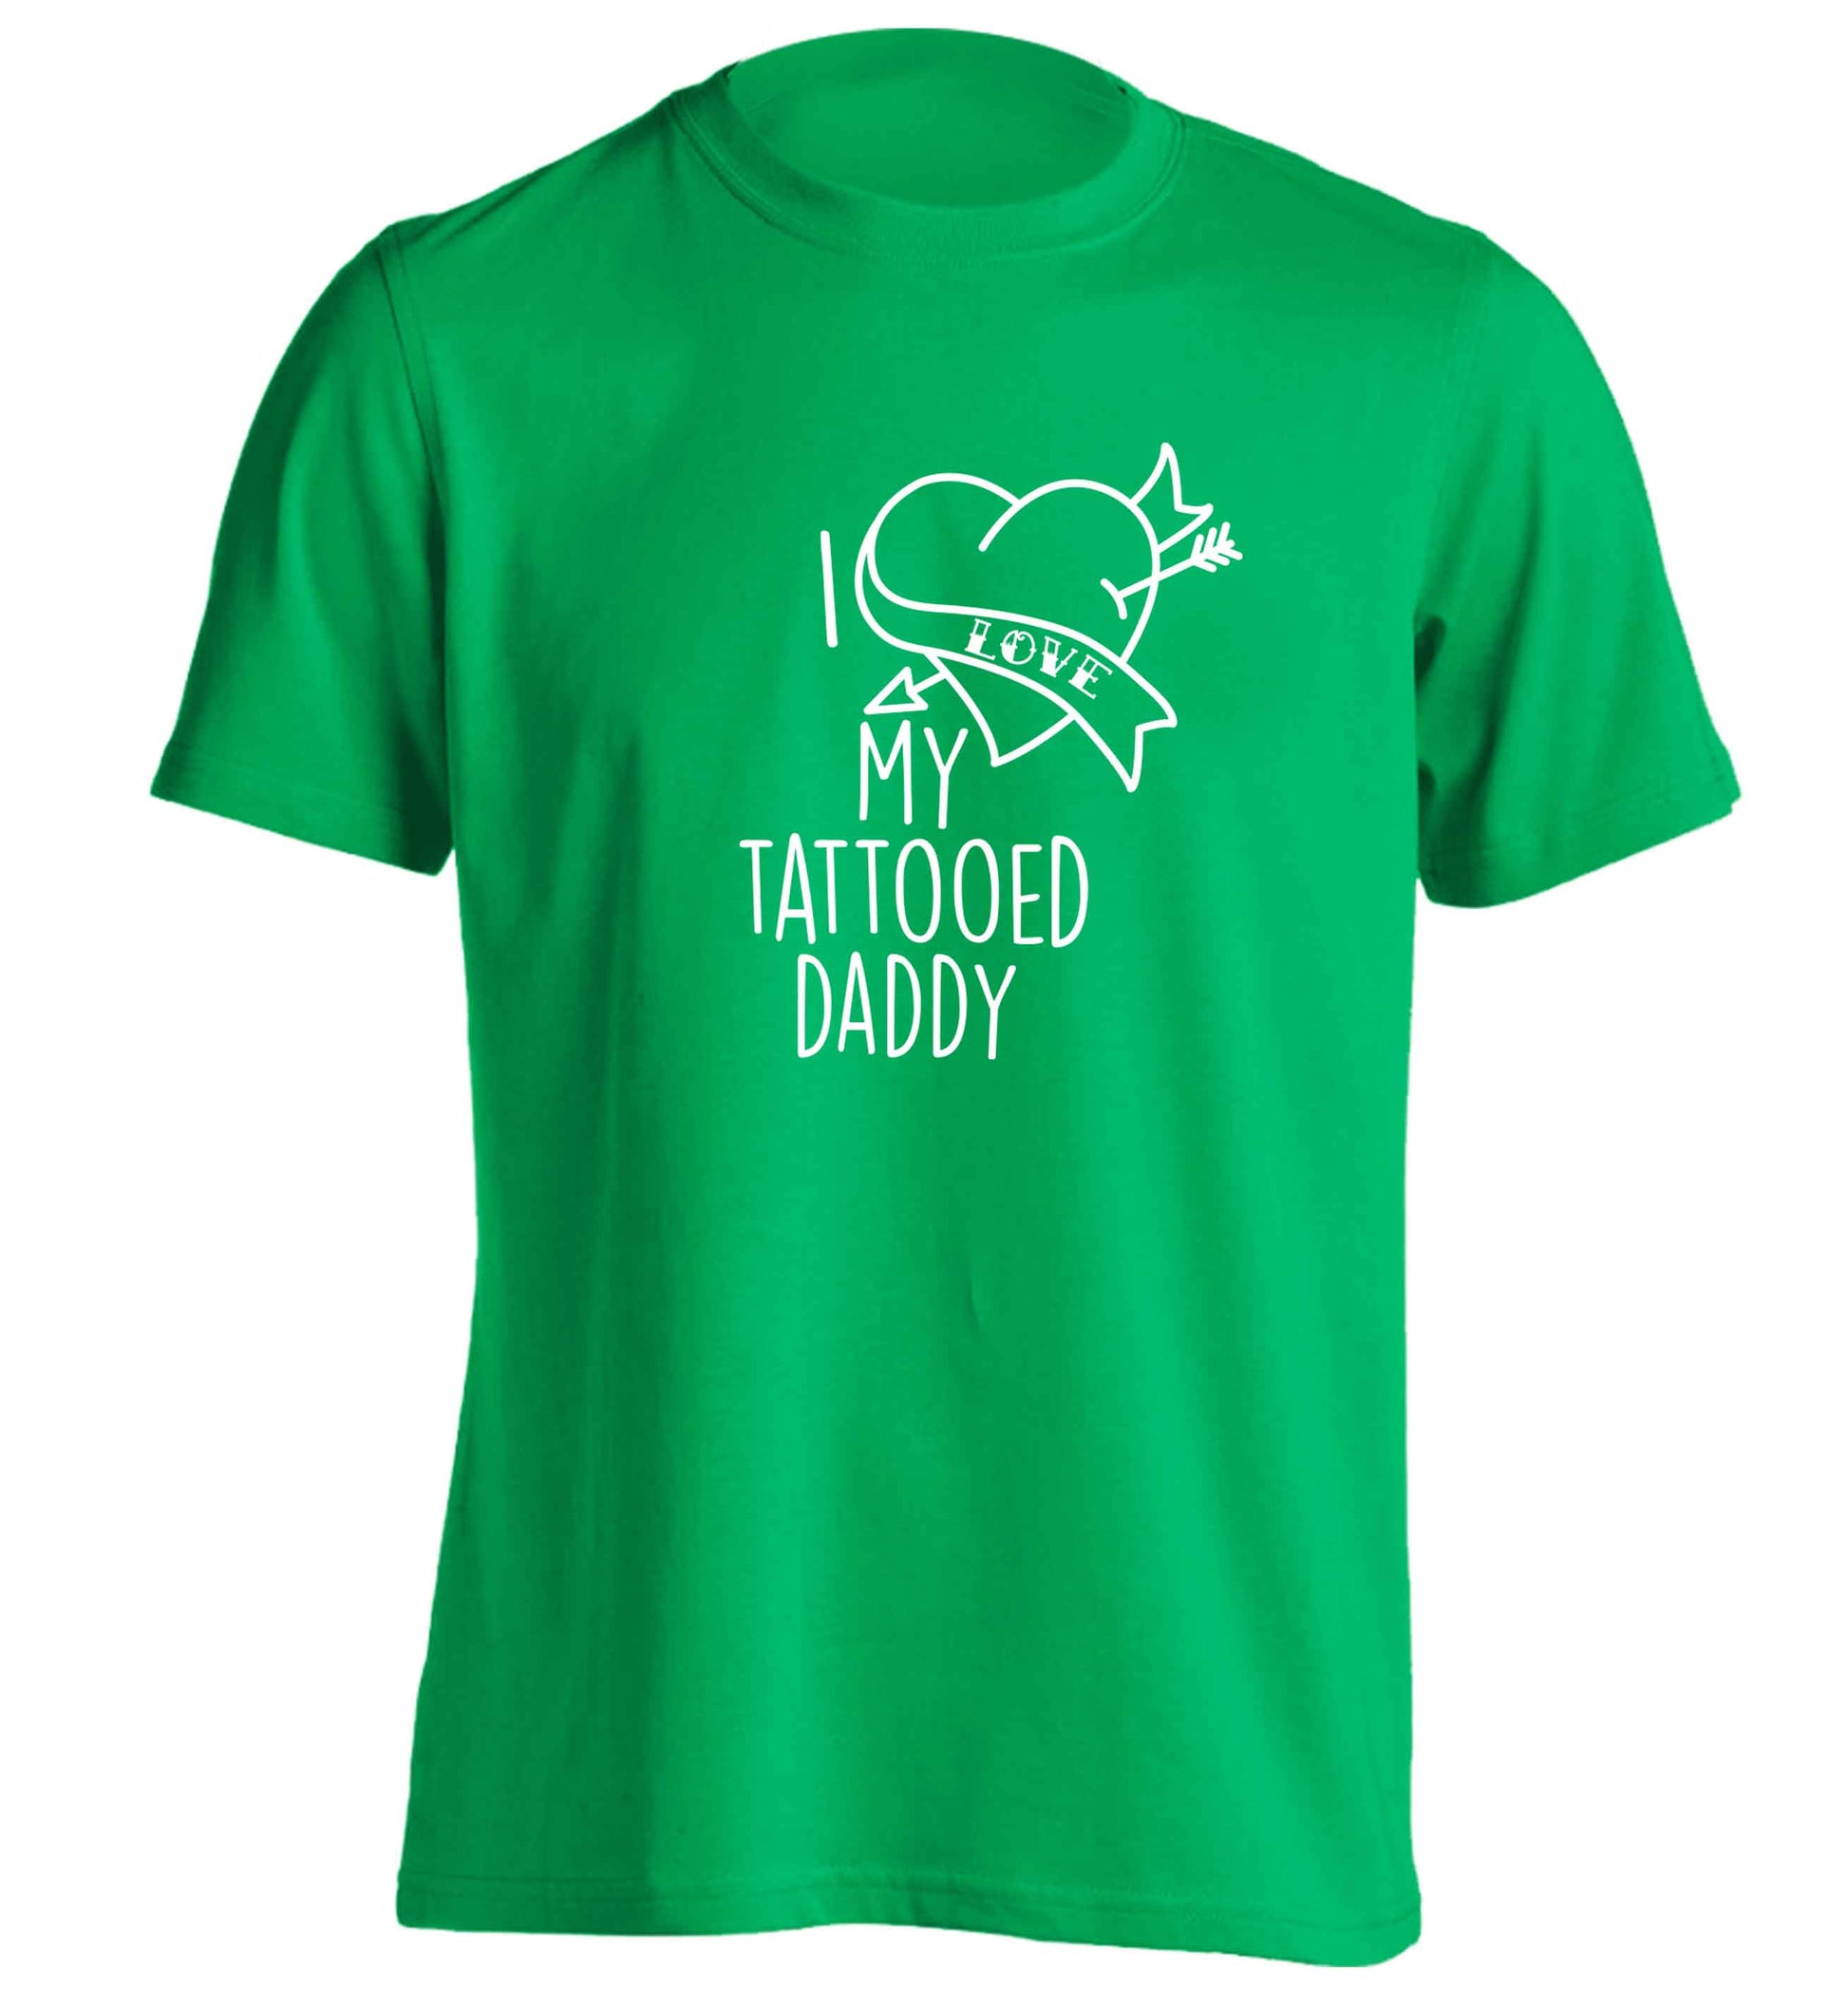 I love my tattooed daddy adults unisex green Tshirt 2XL